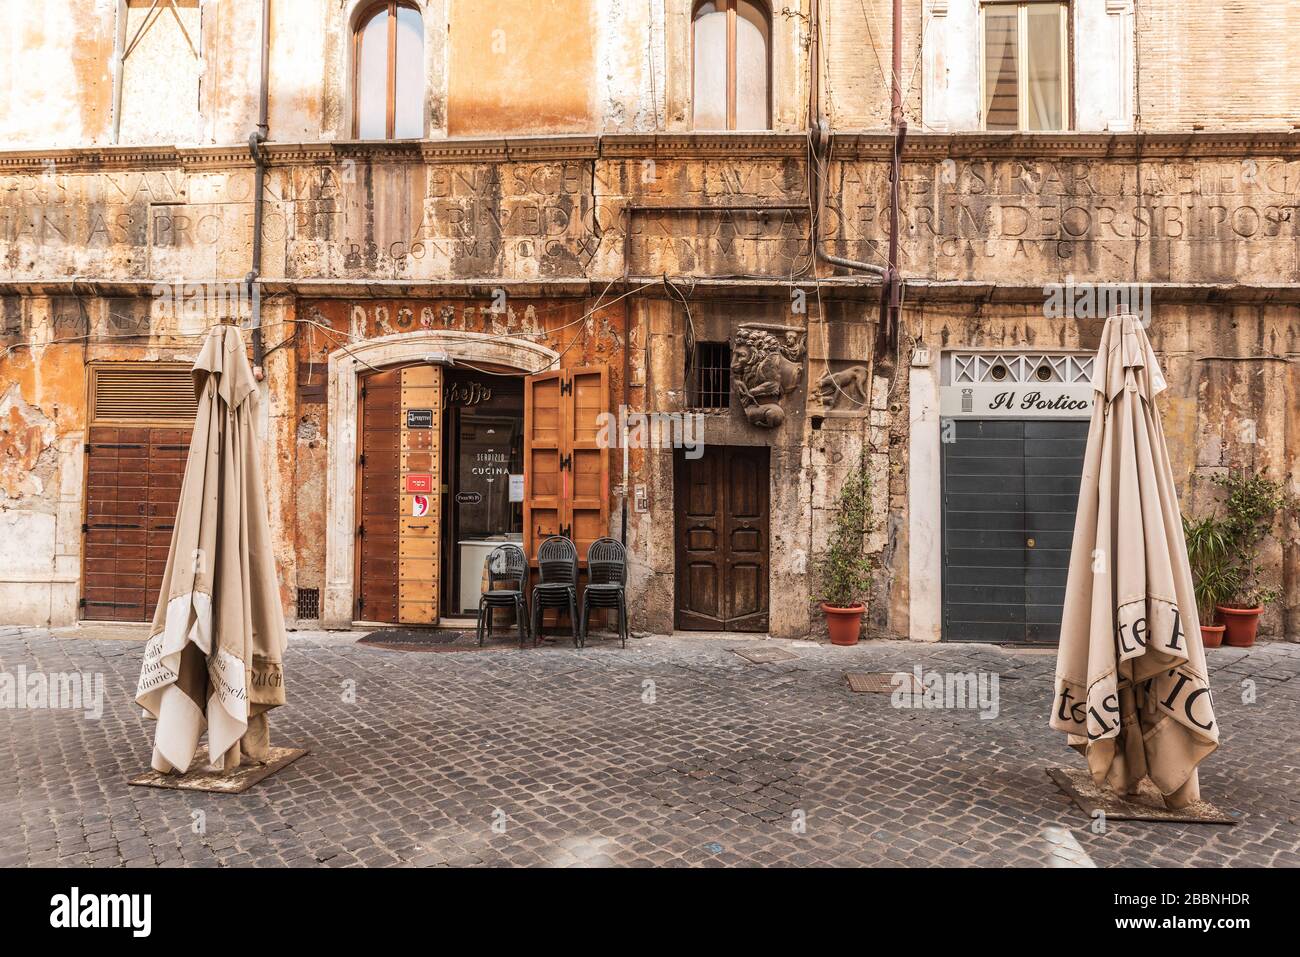 Ghetto Ebraico, Jewish Ghetto, Rome, Lazio, Italy, Europa Stock Photo -  Alamy